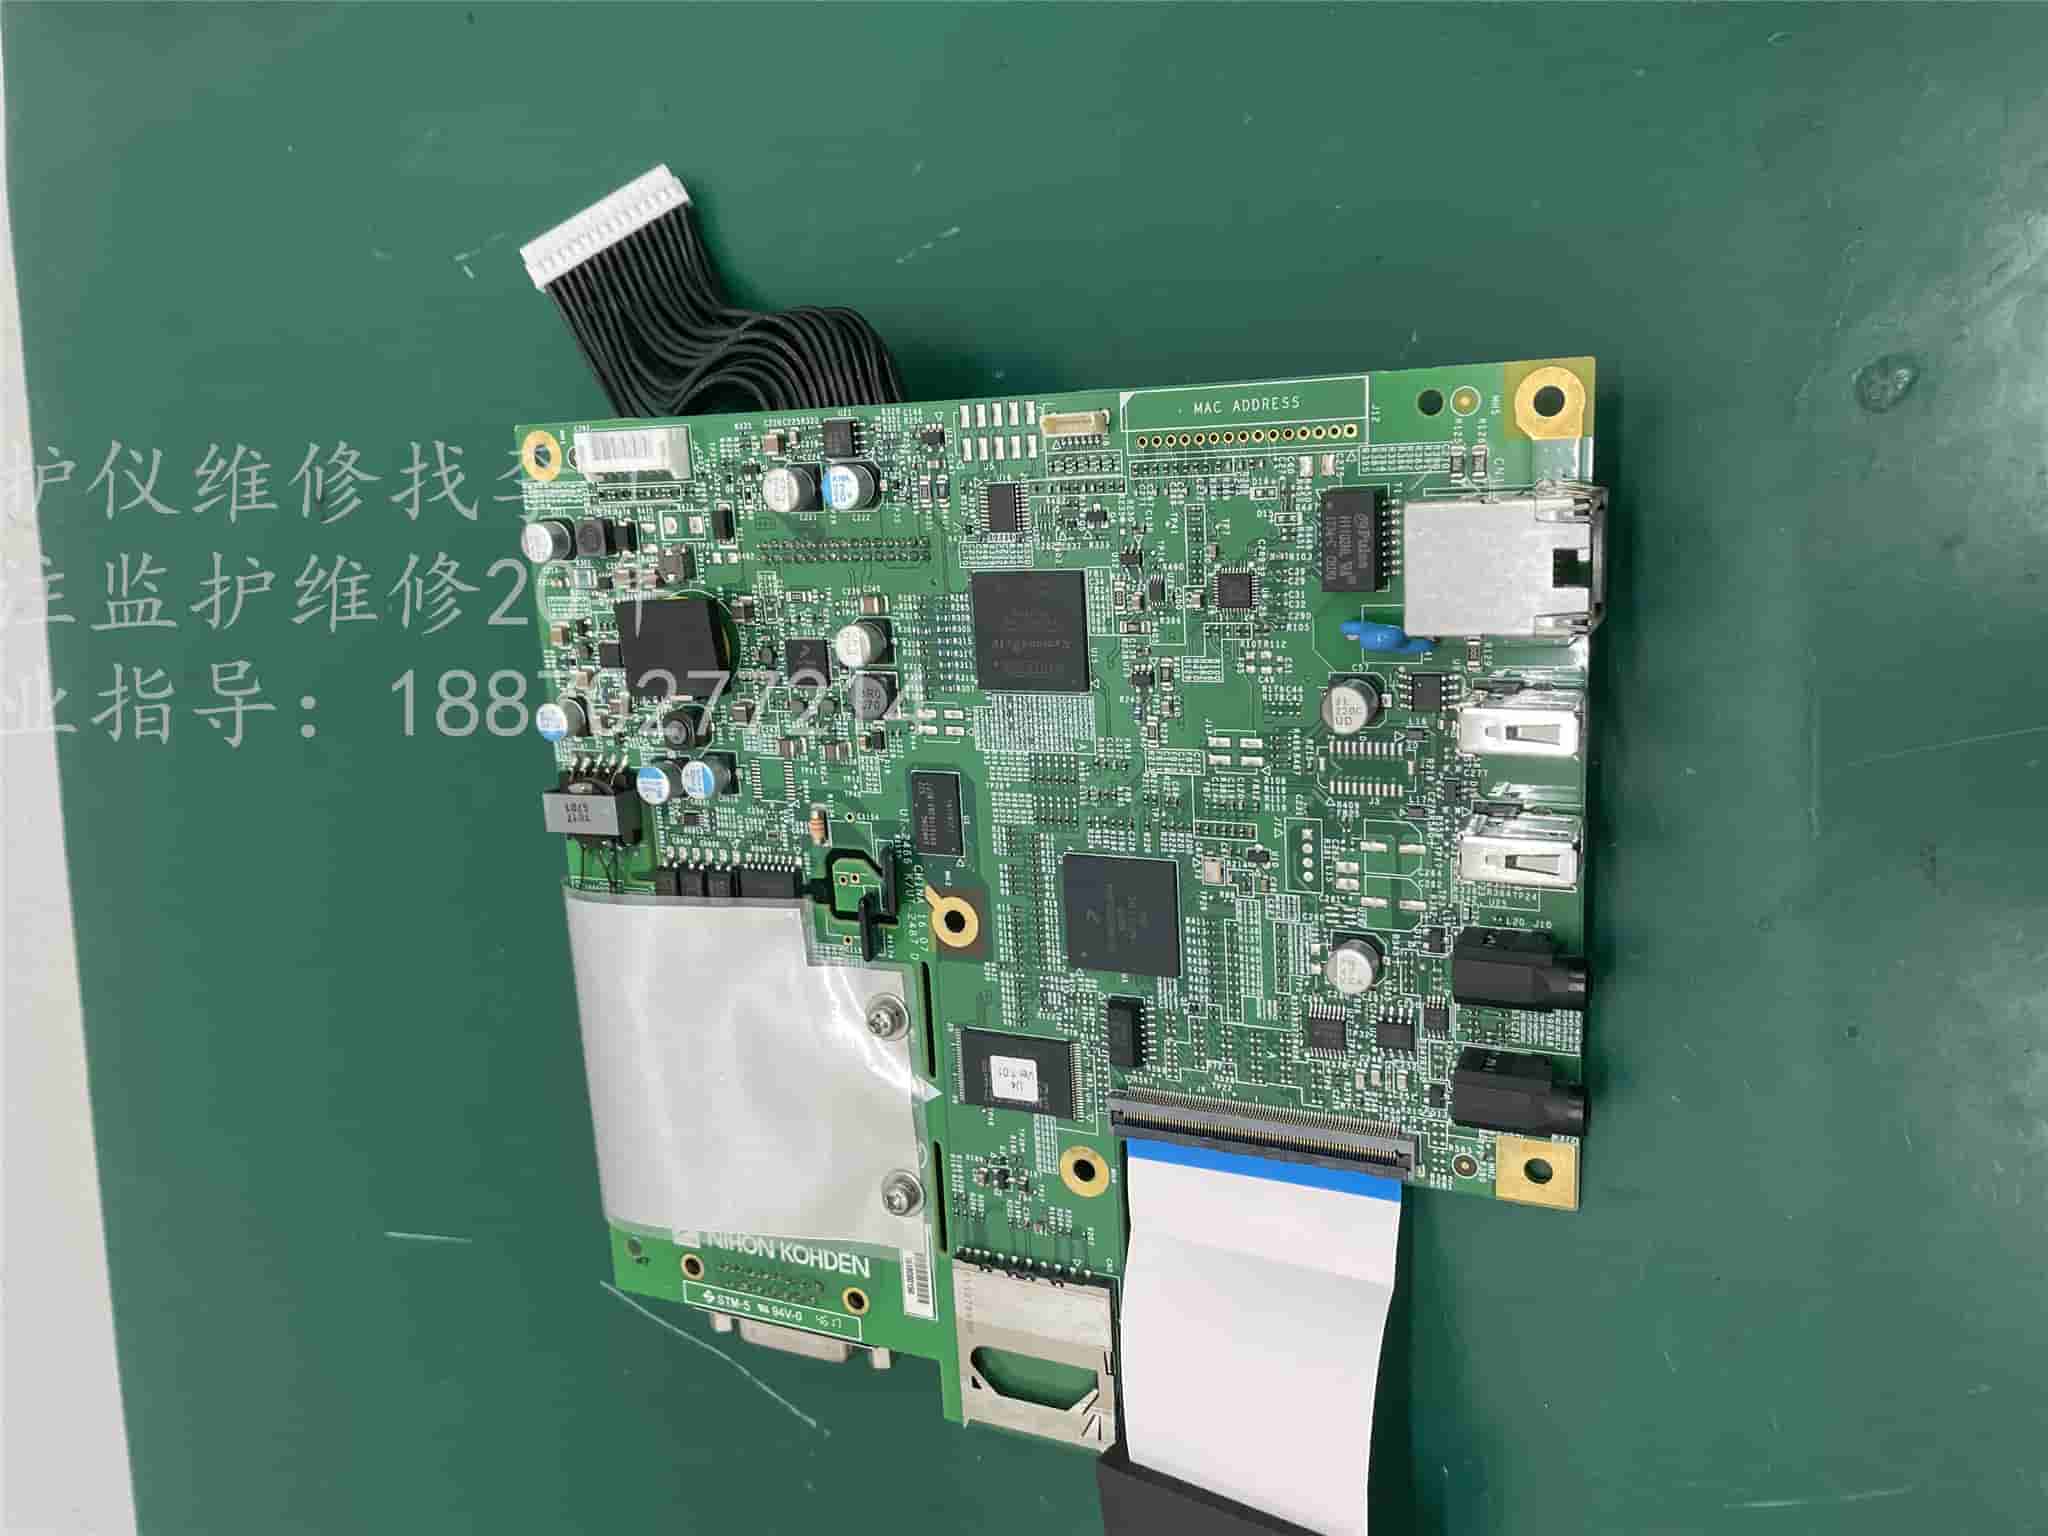 日本光电ECG-2250心电图机主板SMT-5 94V-0 包括显示板、VGA、USB、网卡接口  